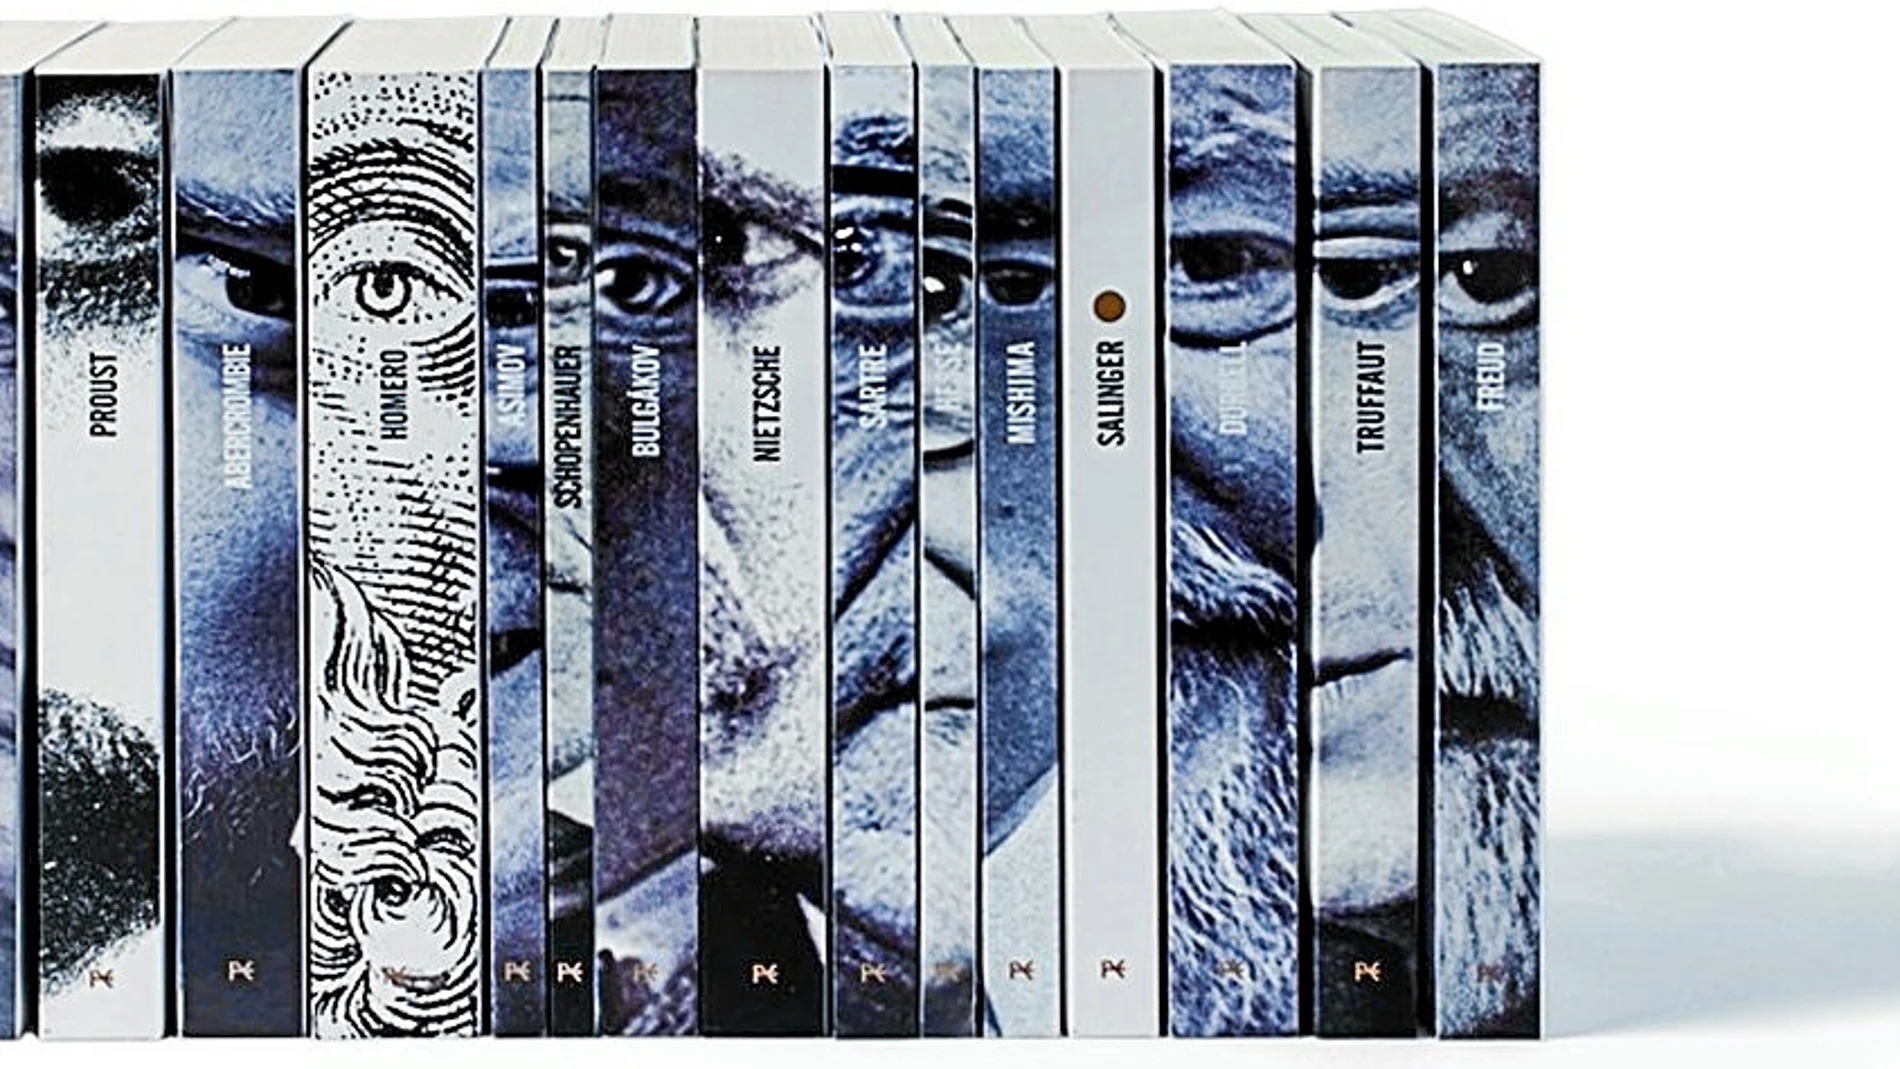 Los ojos de los autores que son reeditados (salvo el de Salinger, claro) aparecen en los lomos de la edición especial